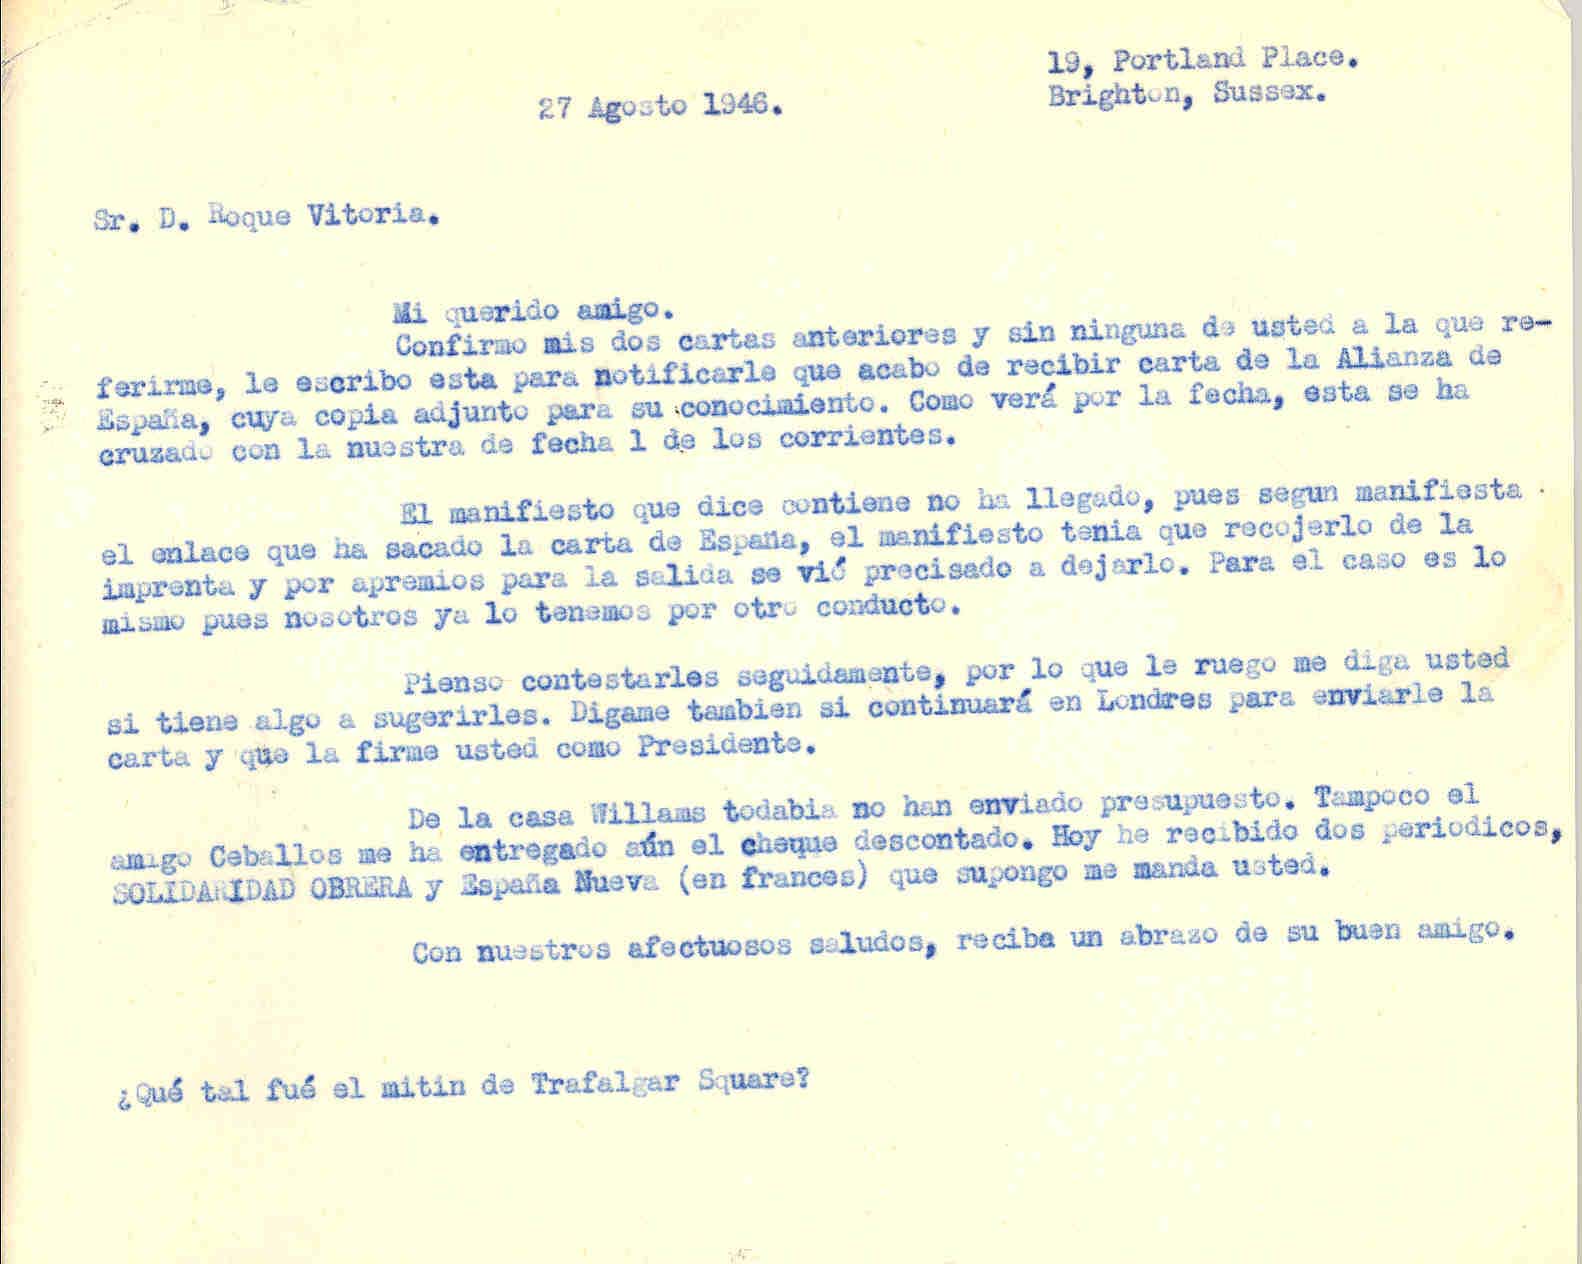 Carta a Roque Victoria que sirve de confirmación de las dos cartas anteriores, habla de algunas publicaciones que ha recibido.